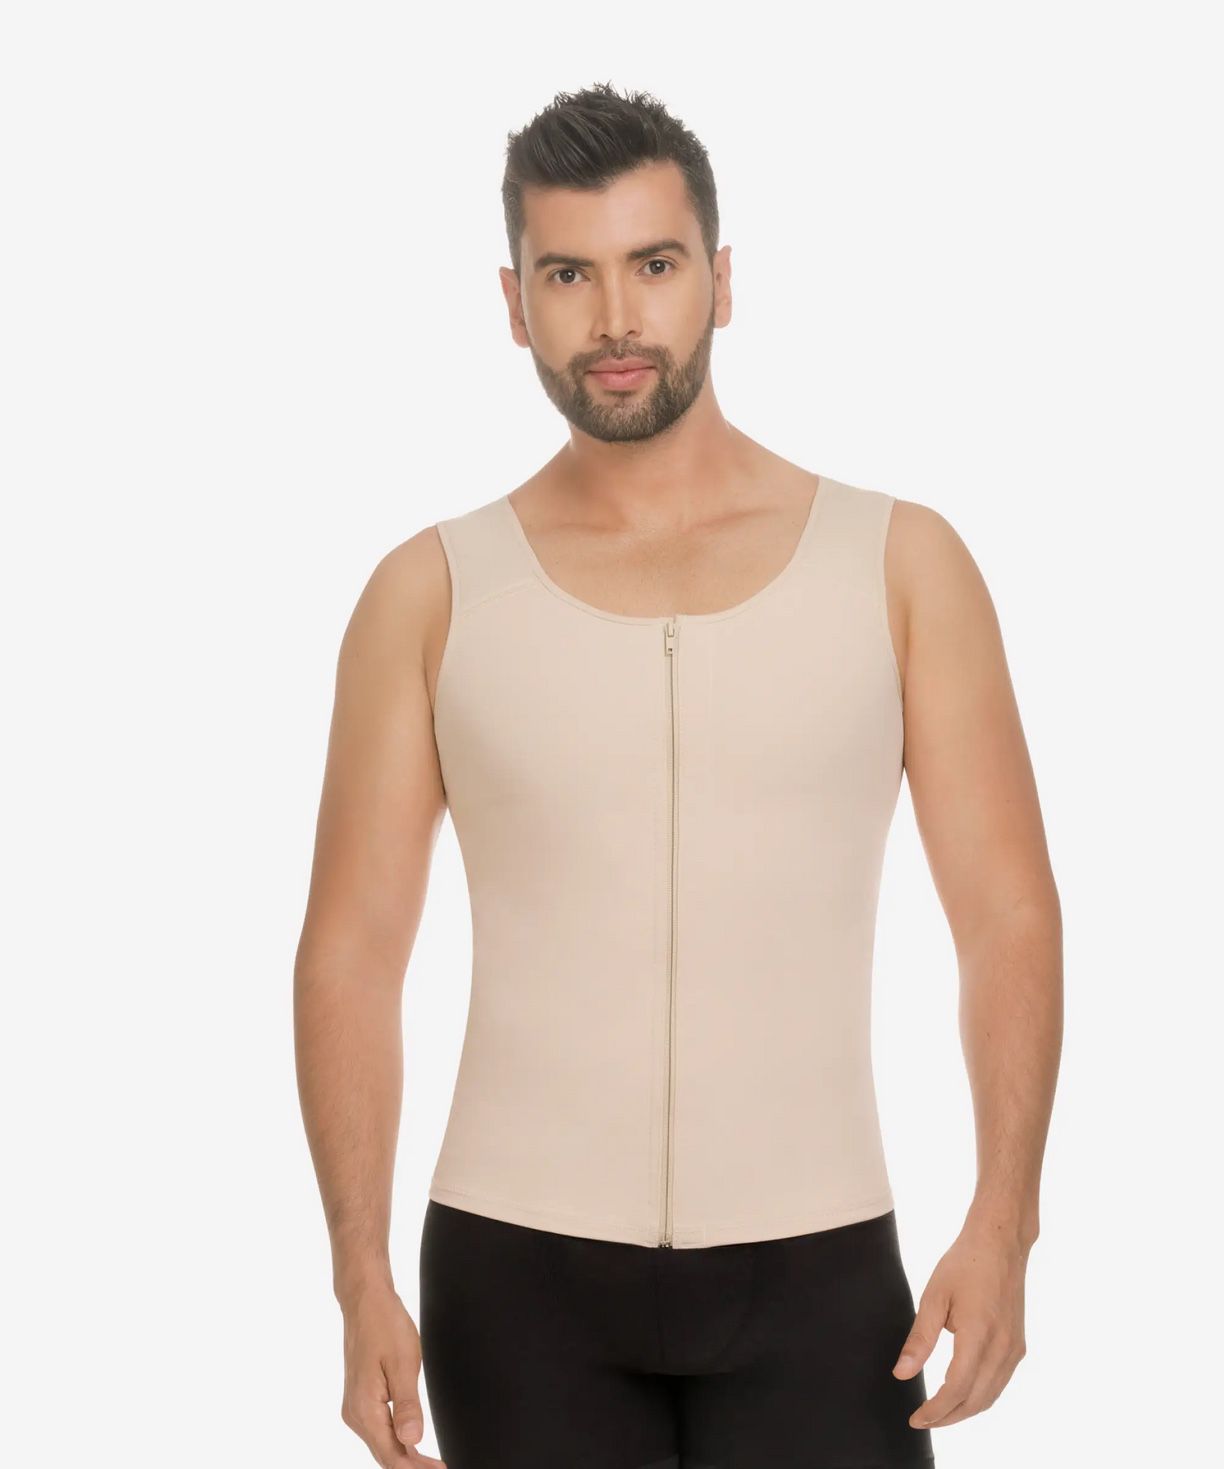 Chaleco Termico De Hombre/ Men’s Posture Thermal Vest